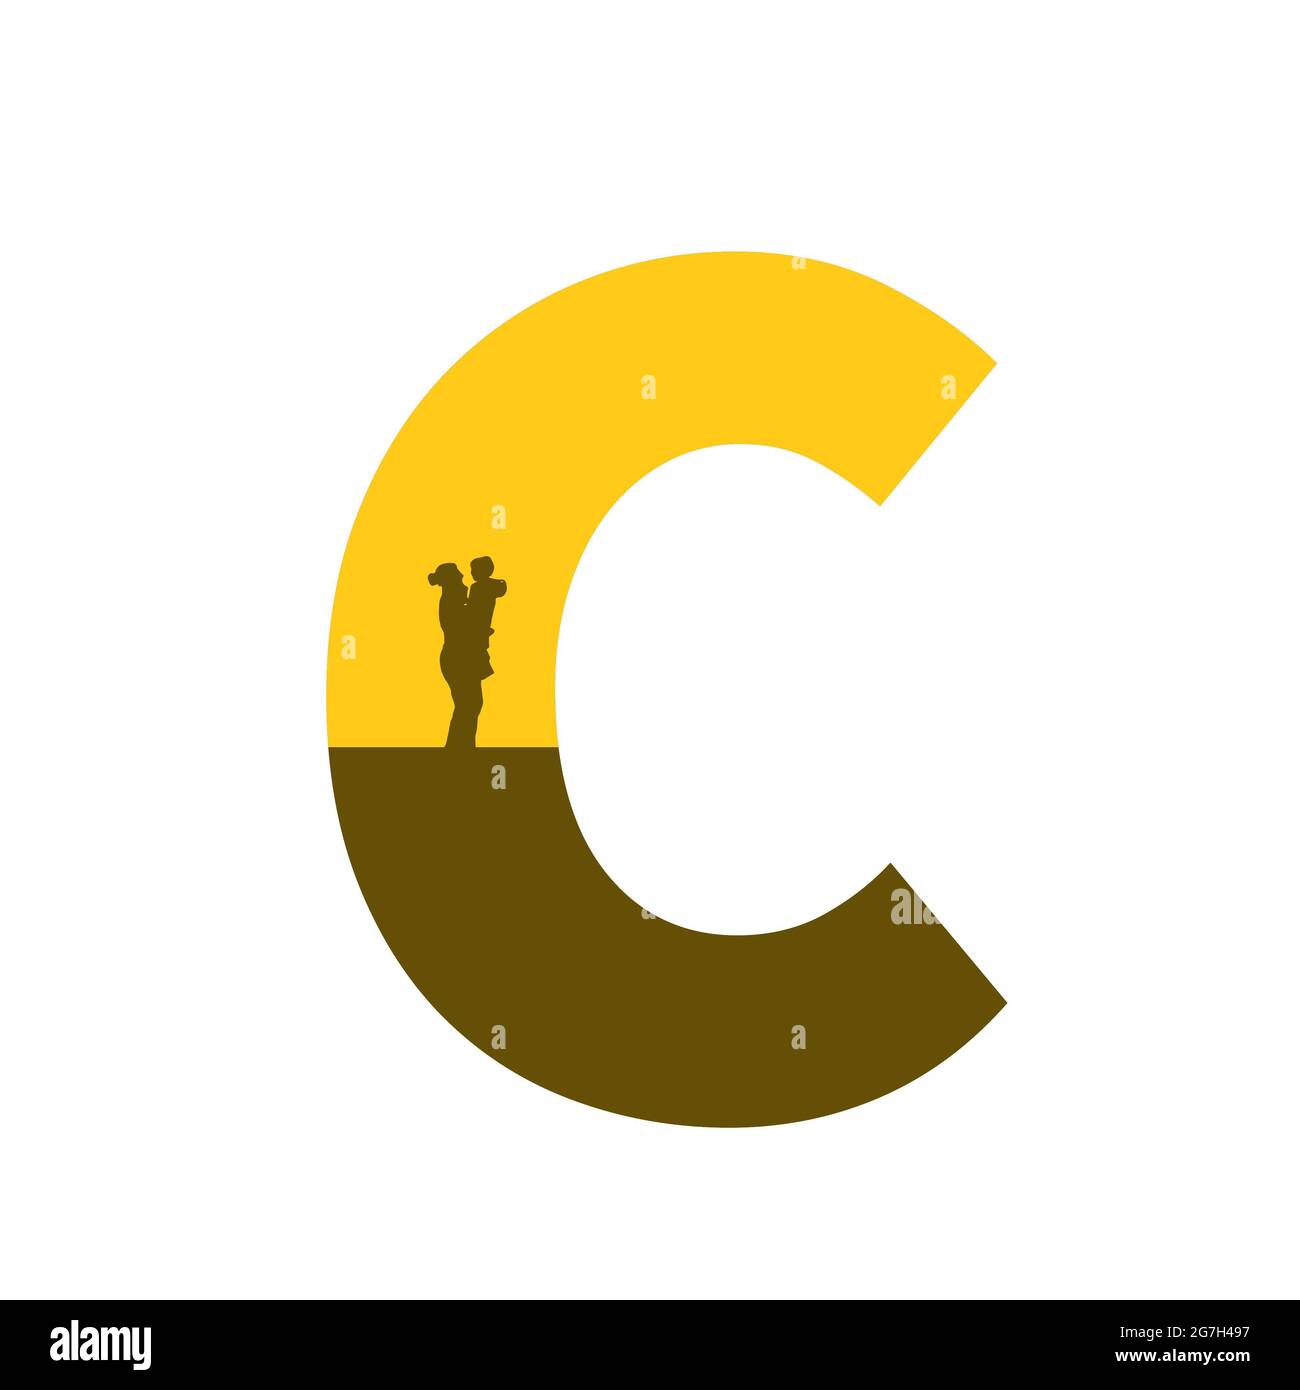 Lettre C de l'alphabet avec une silhouette de mère avec enfant sur le bras, de couleur ocre et marron, isolée sur fond blanc Banque D'Images